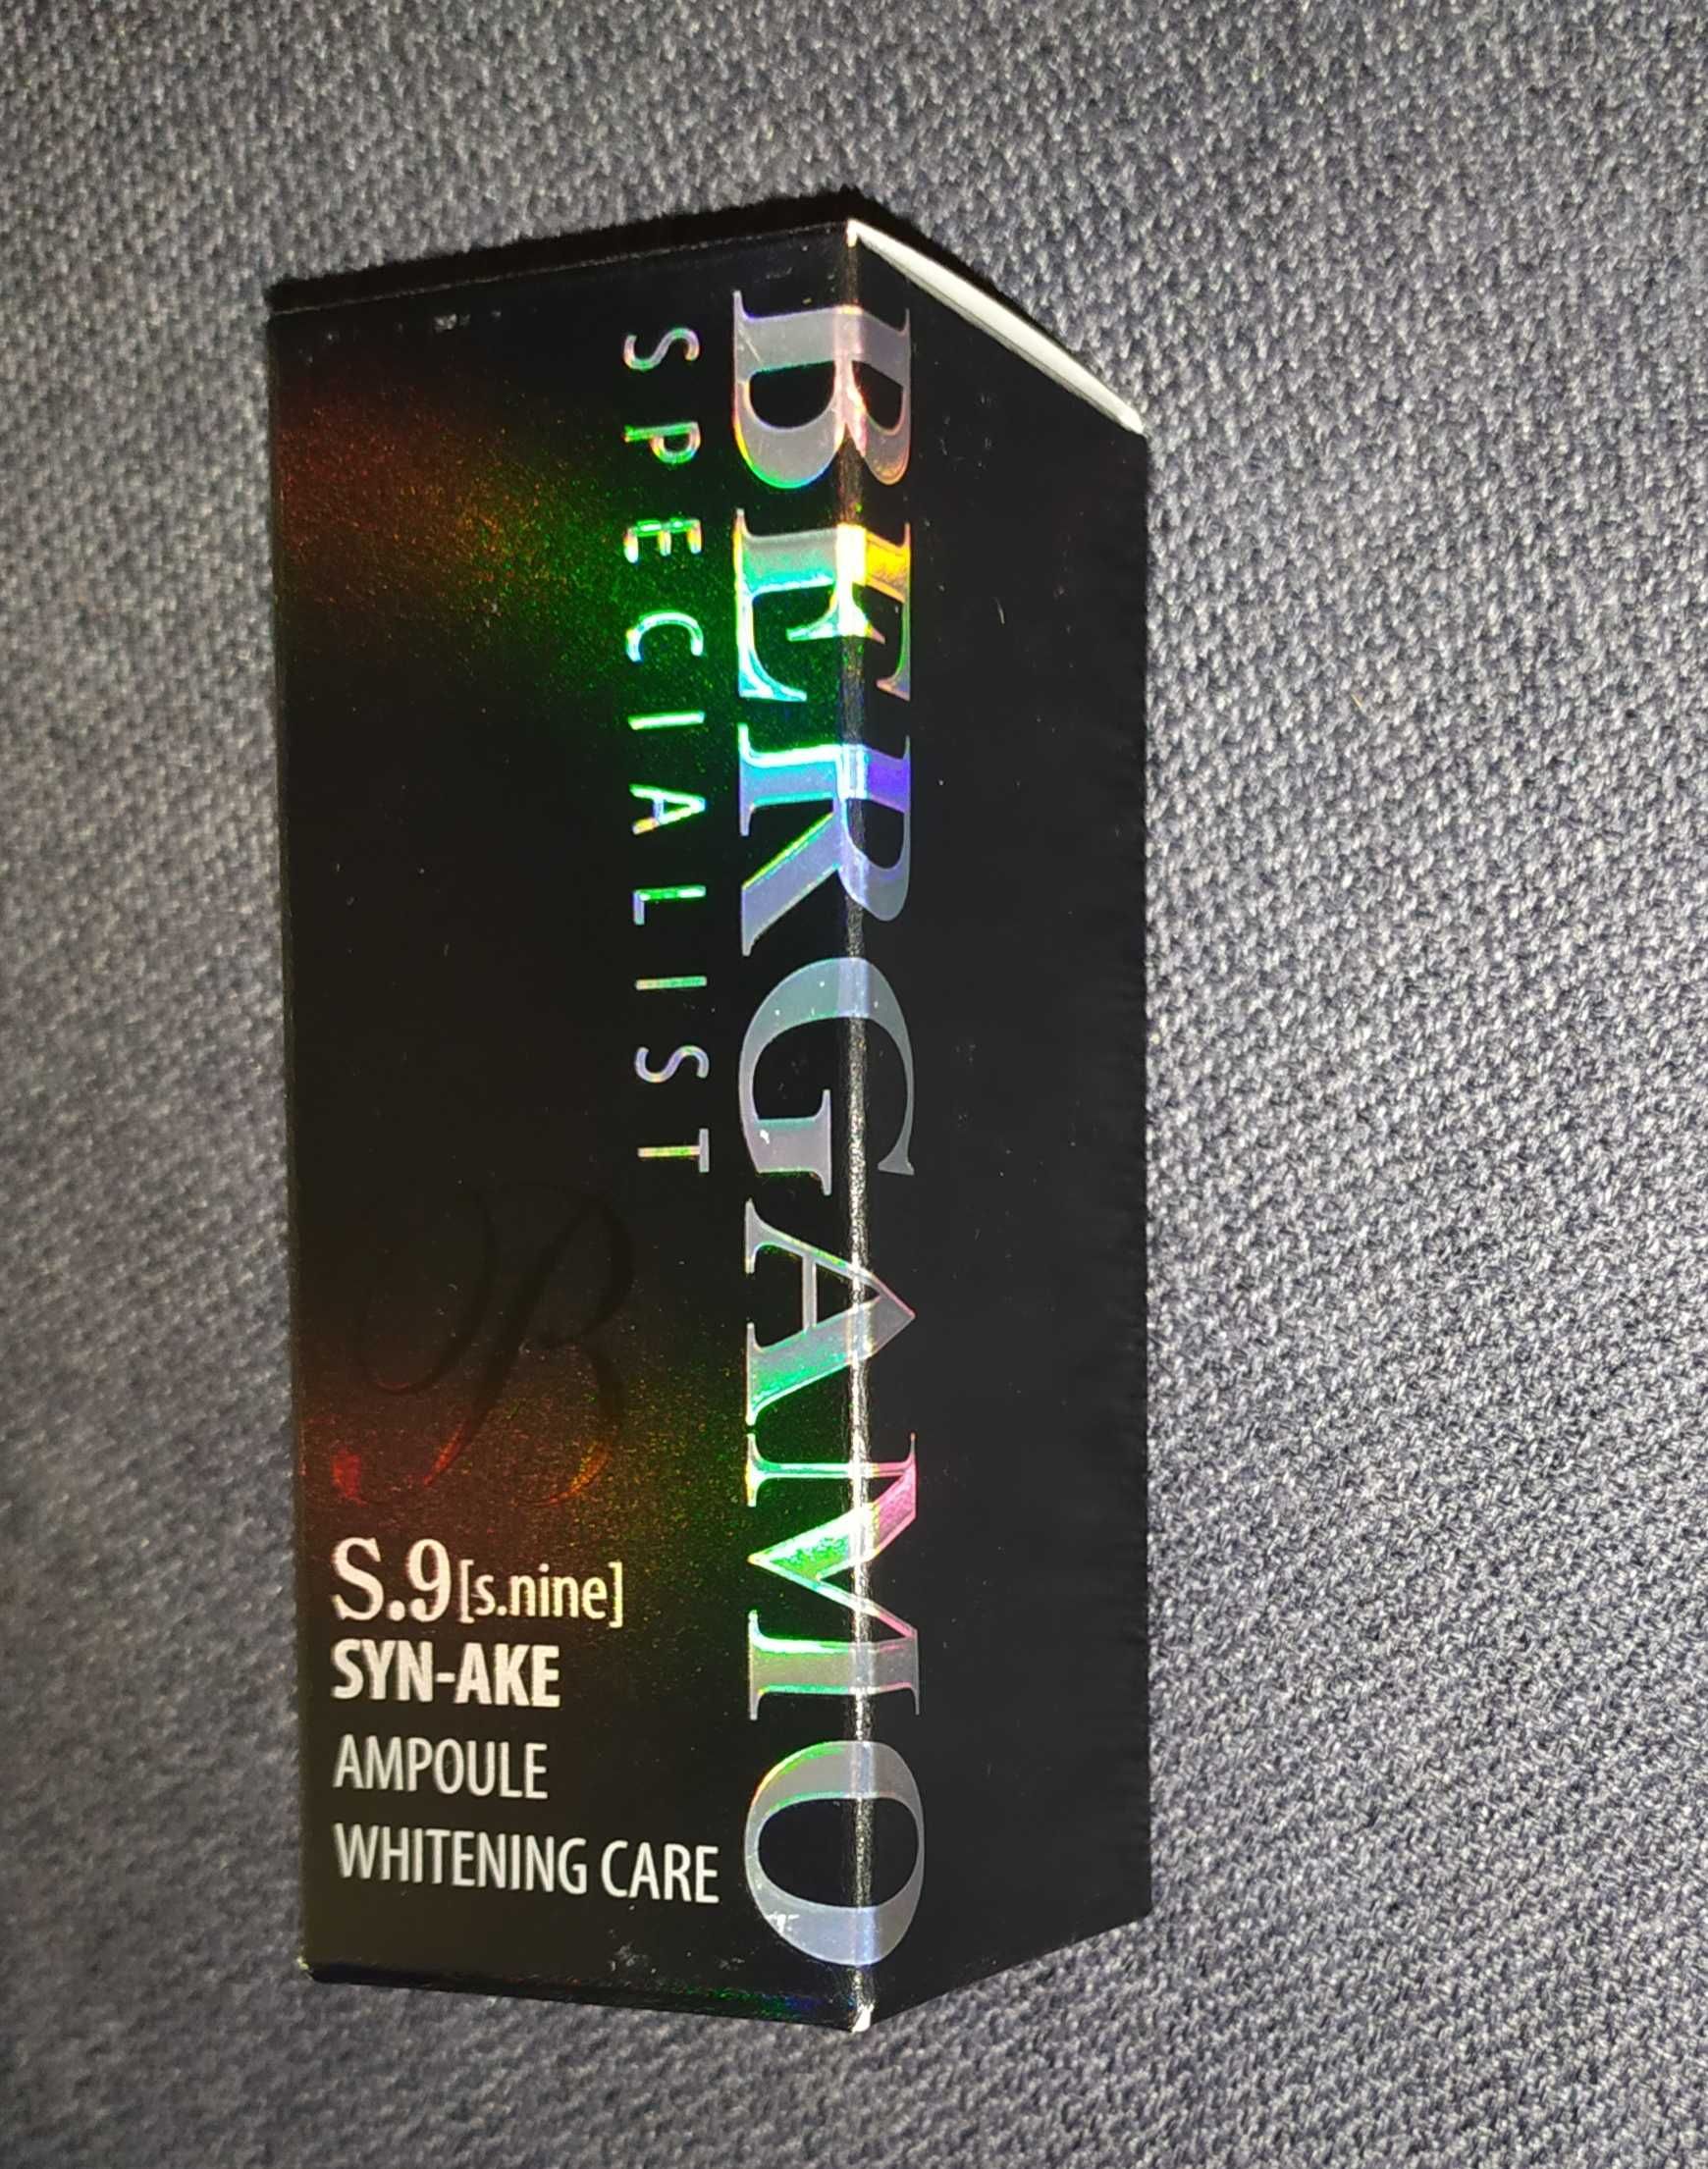 Bergamo S.9 SYN-AKE Ampoule serum do twarzy lifting